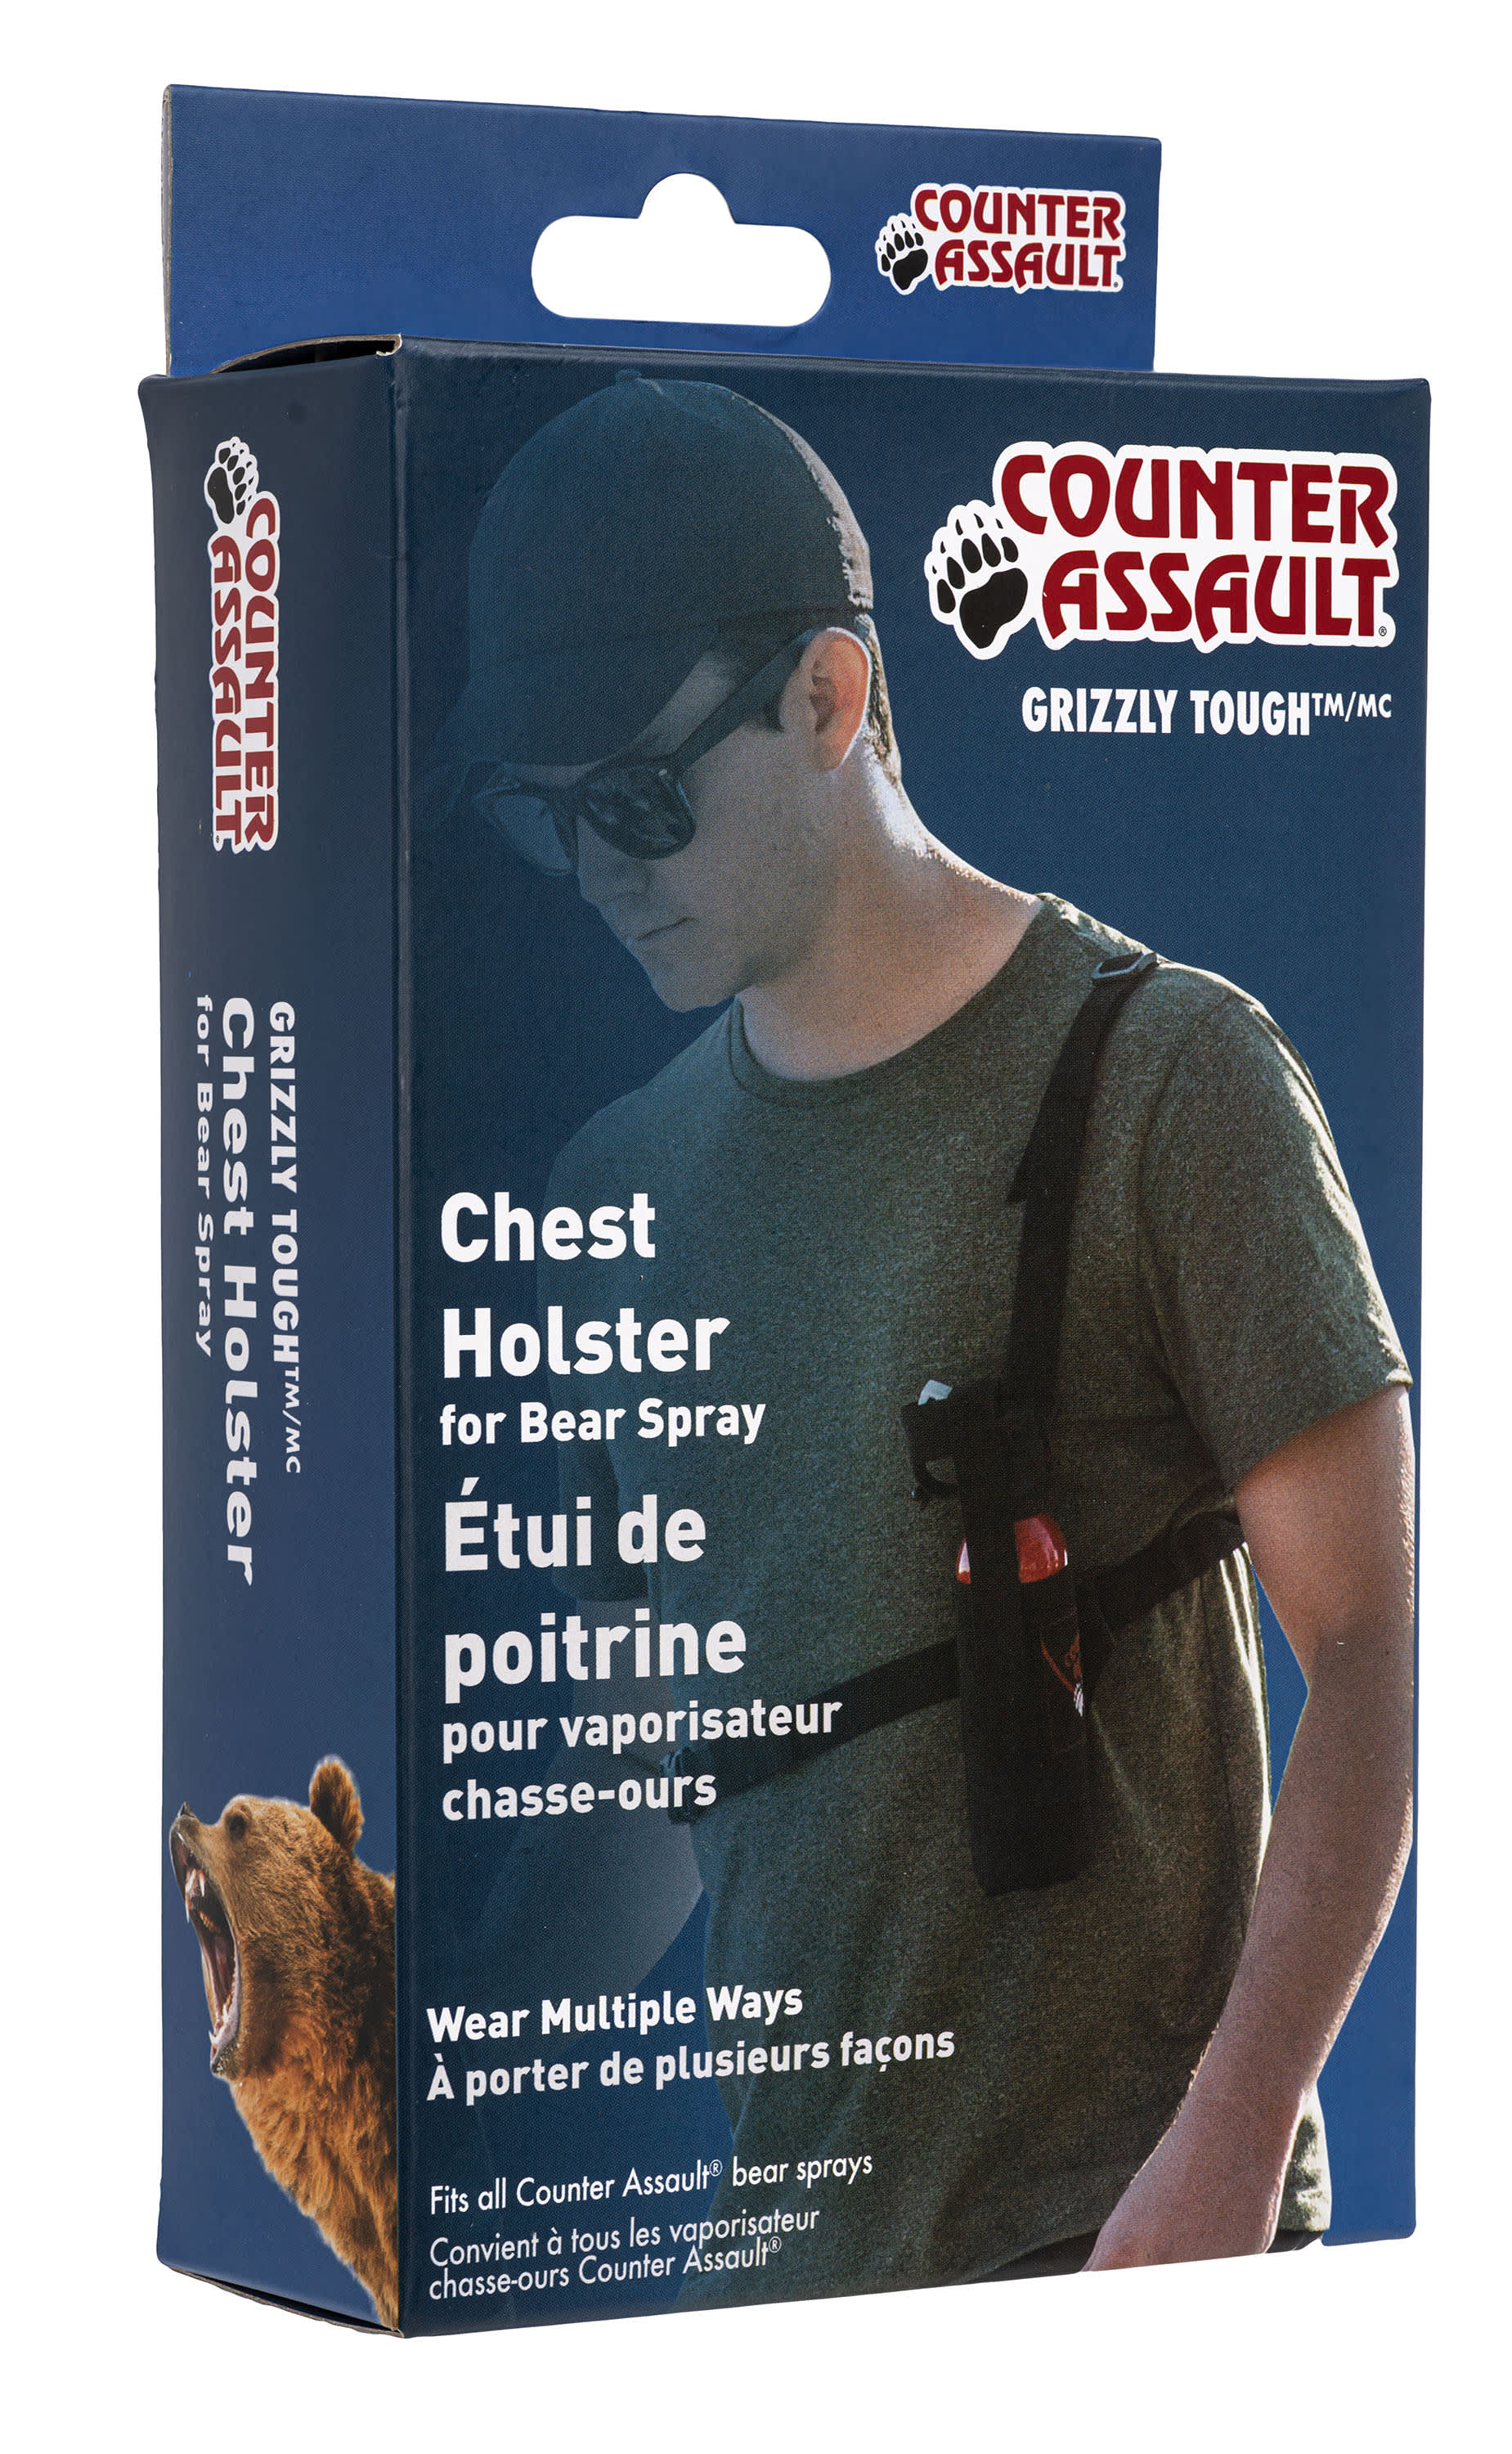 Counter Assault Chest Holster